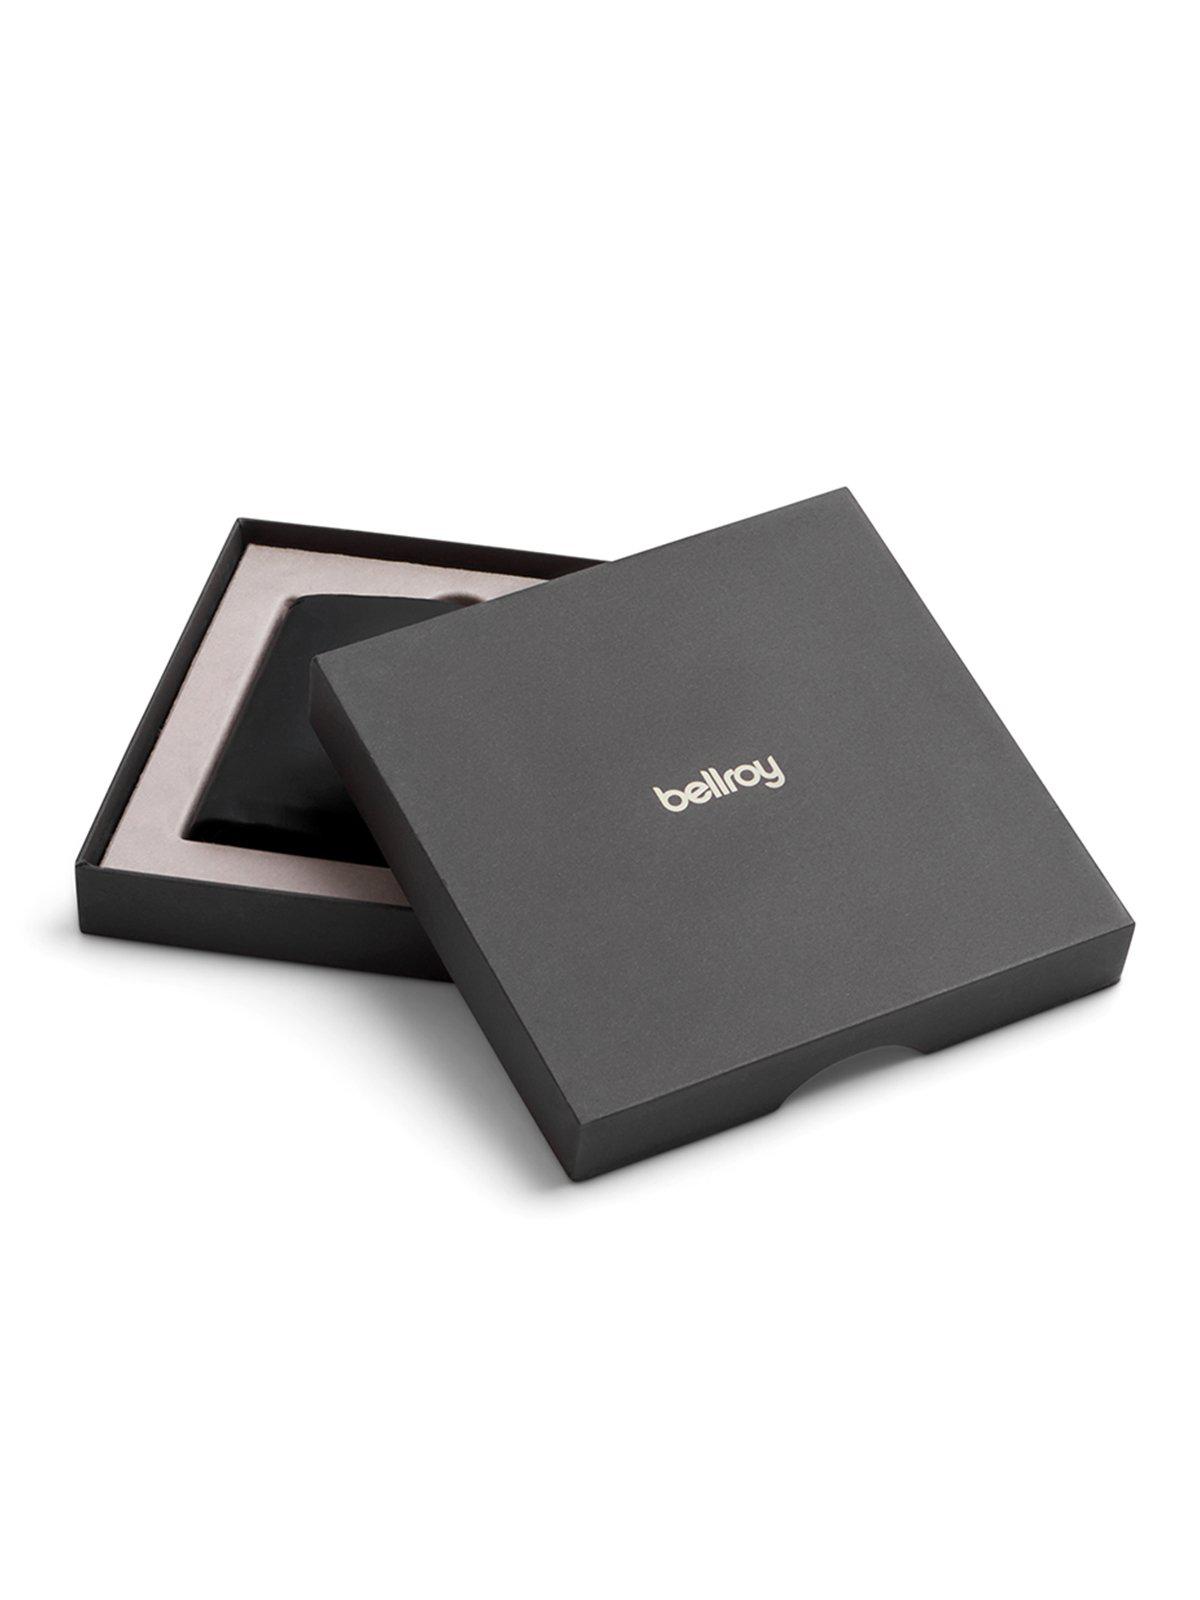 Bellroy Slim Sleeve Wallet Premium Edition Darkwood RFID